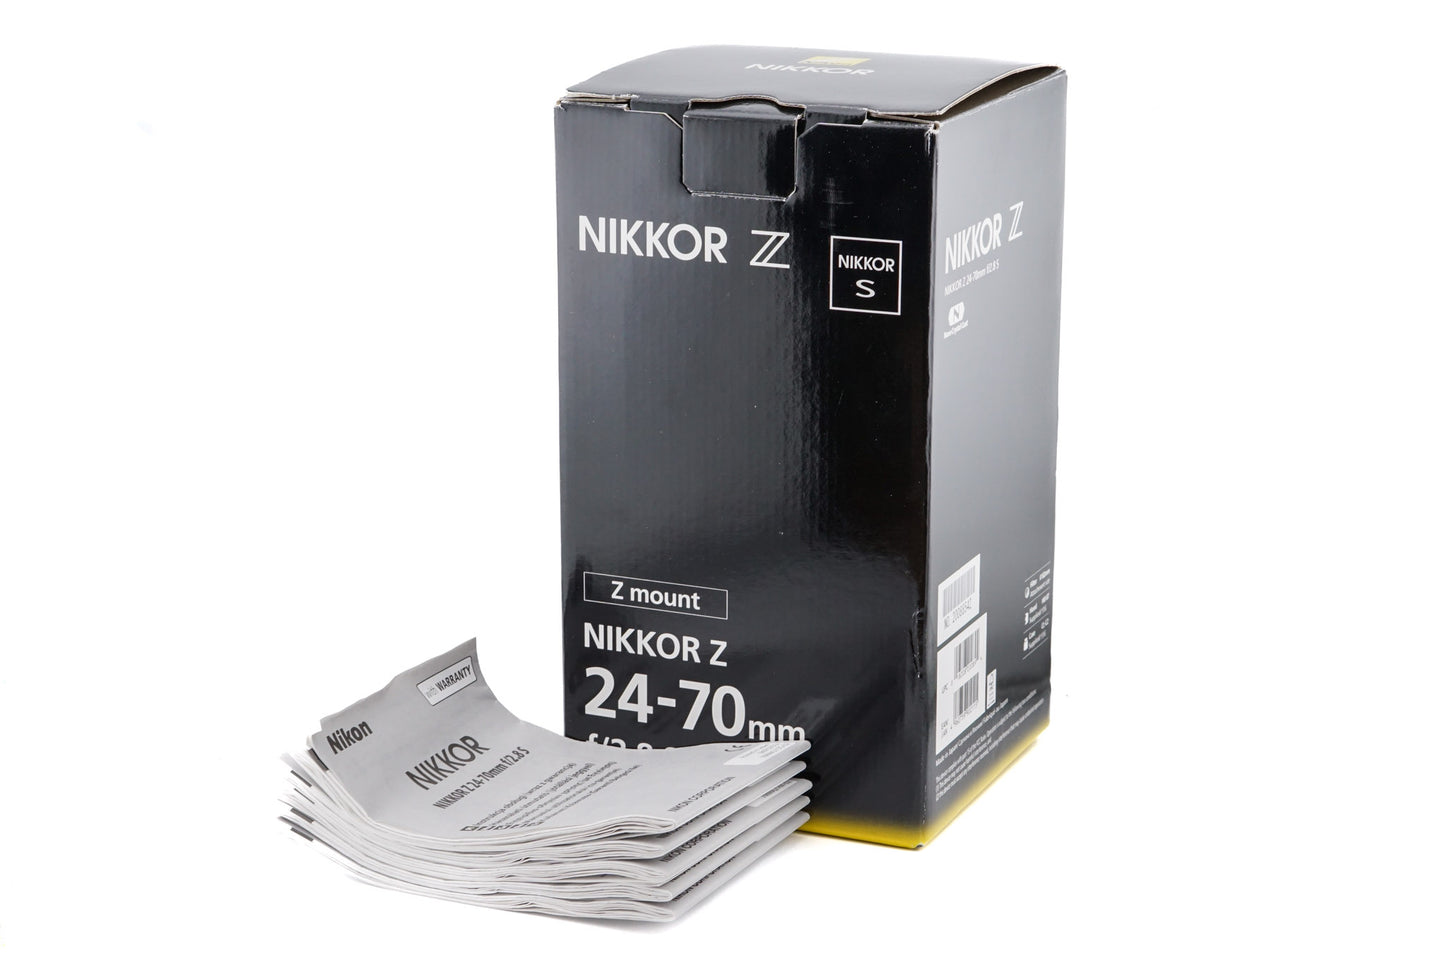 Nikon 24-70mm f2.8 S Nikkor Z